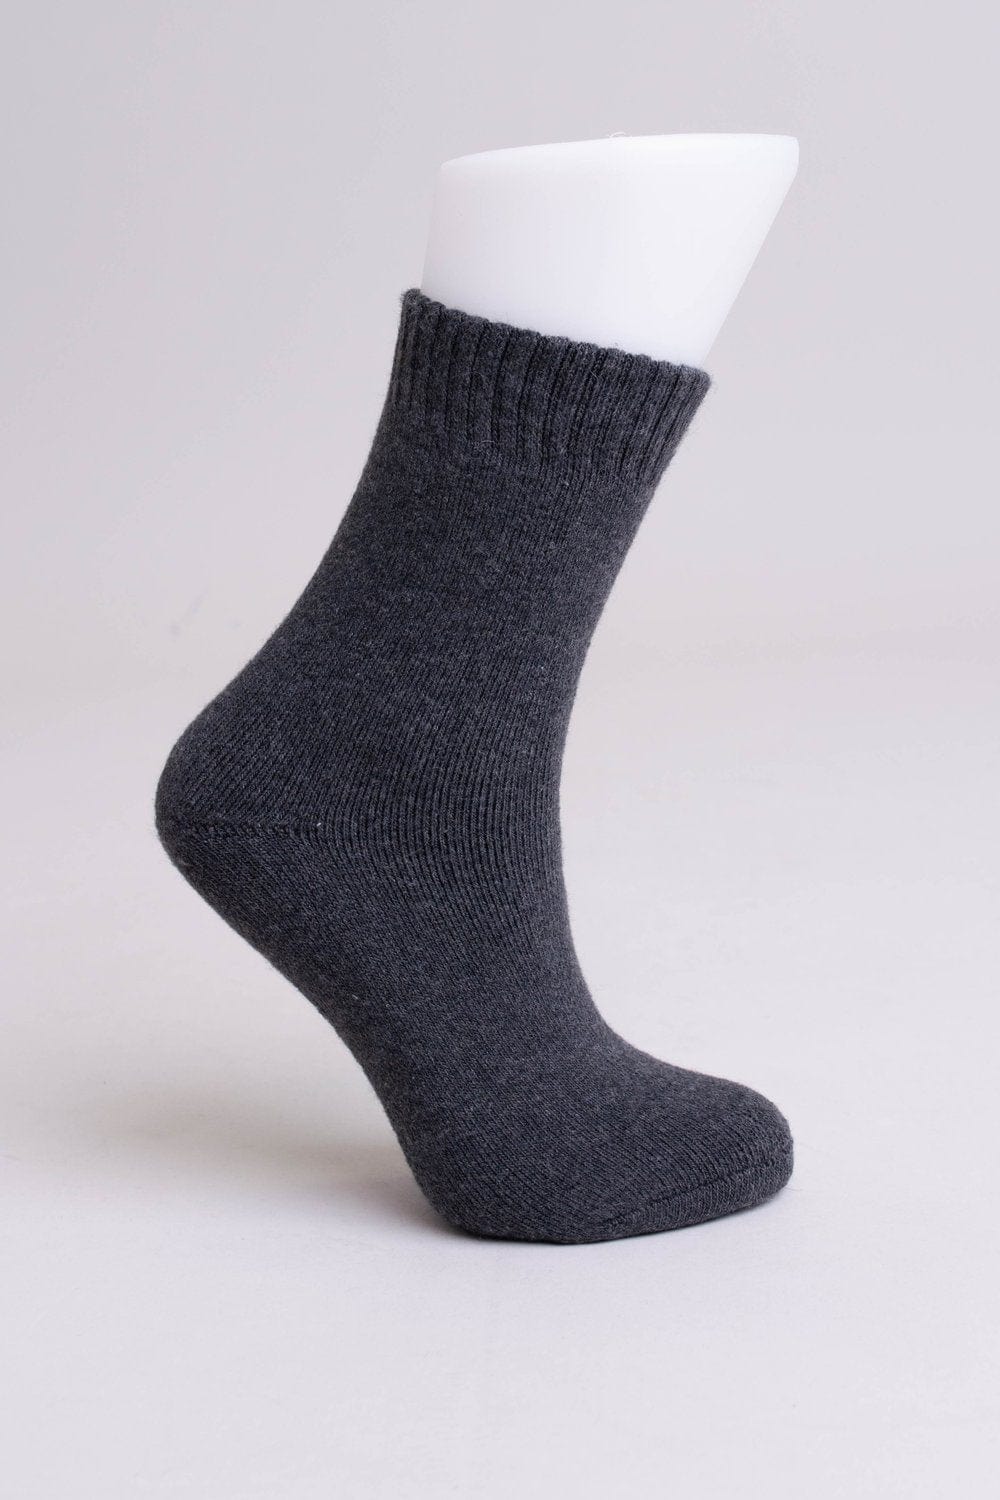 Blue Sky Women&#39;s Socks Charcoal / M Women&#39;s Socks - Merino Wool